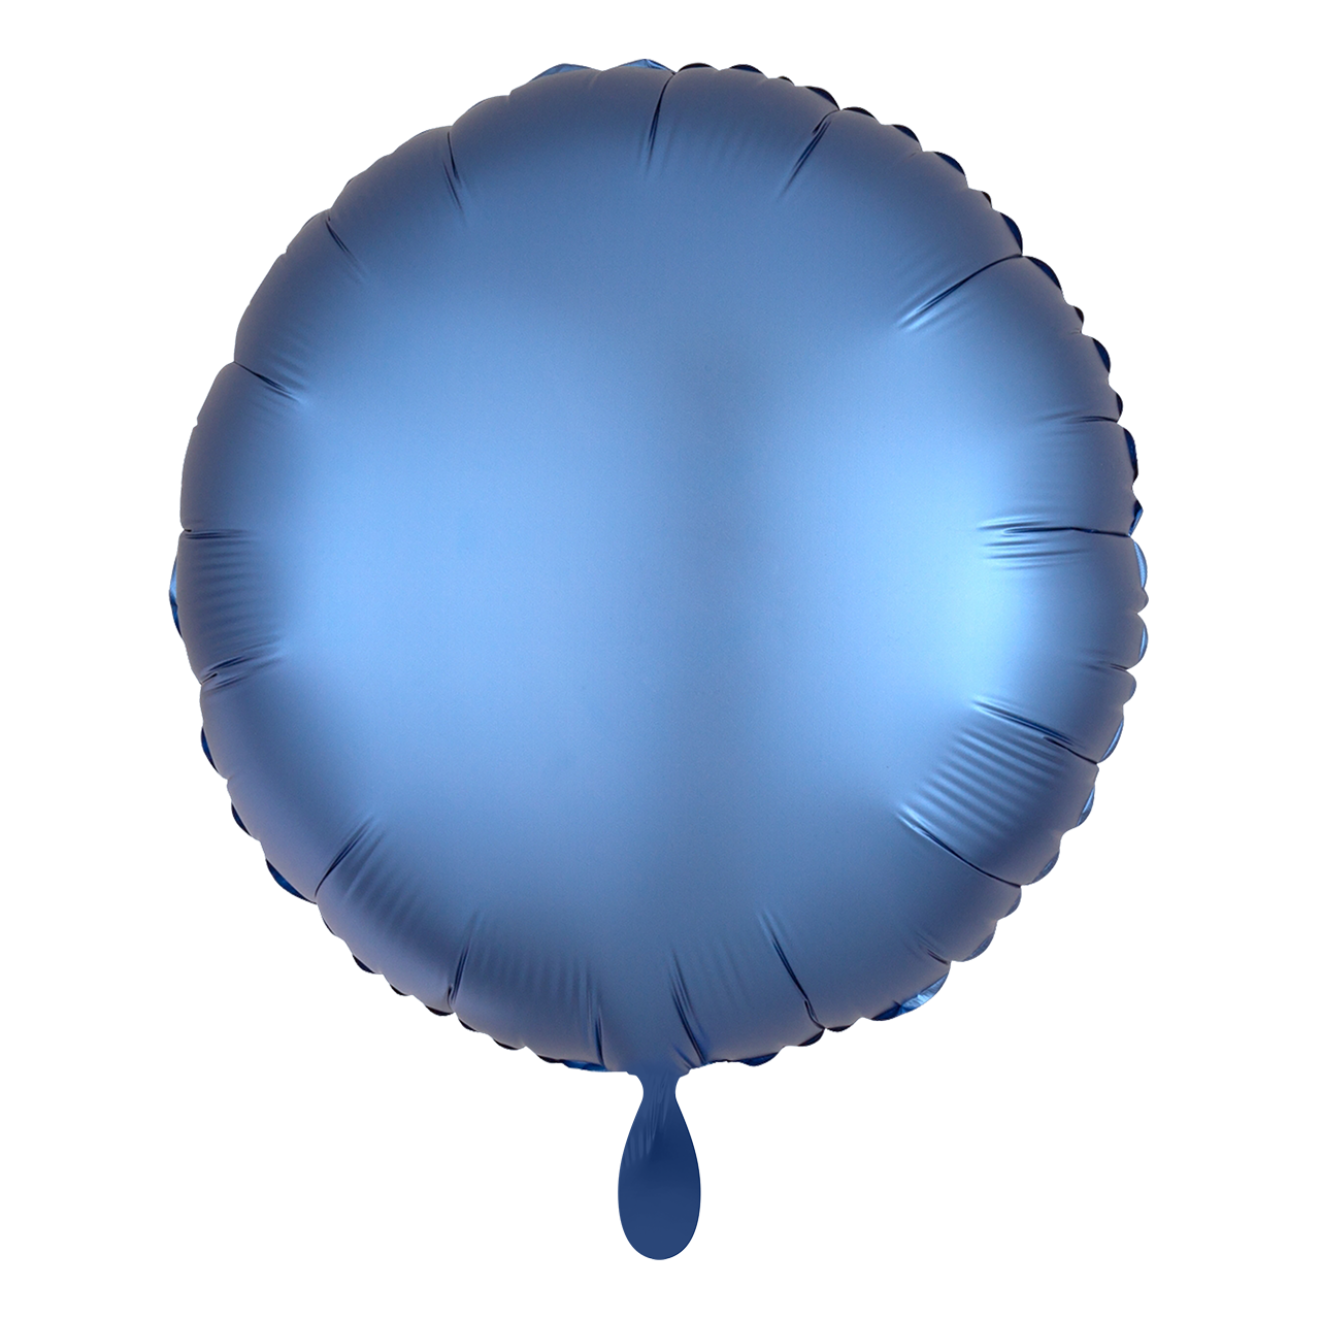 1 Balloon - Rund - Silk Lustre - Blau